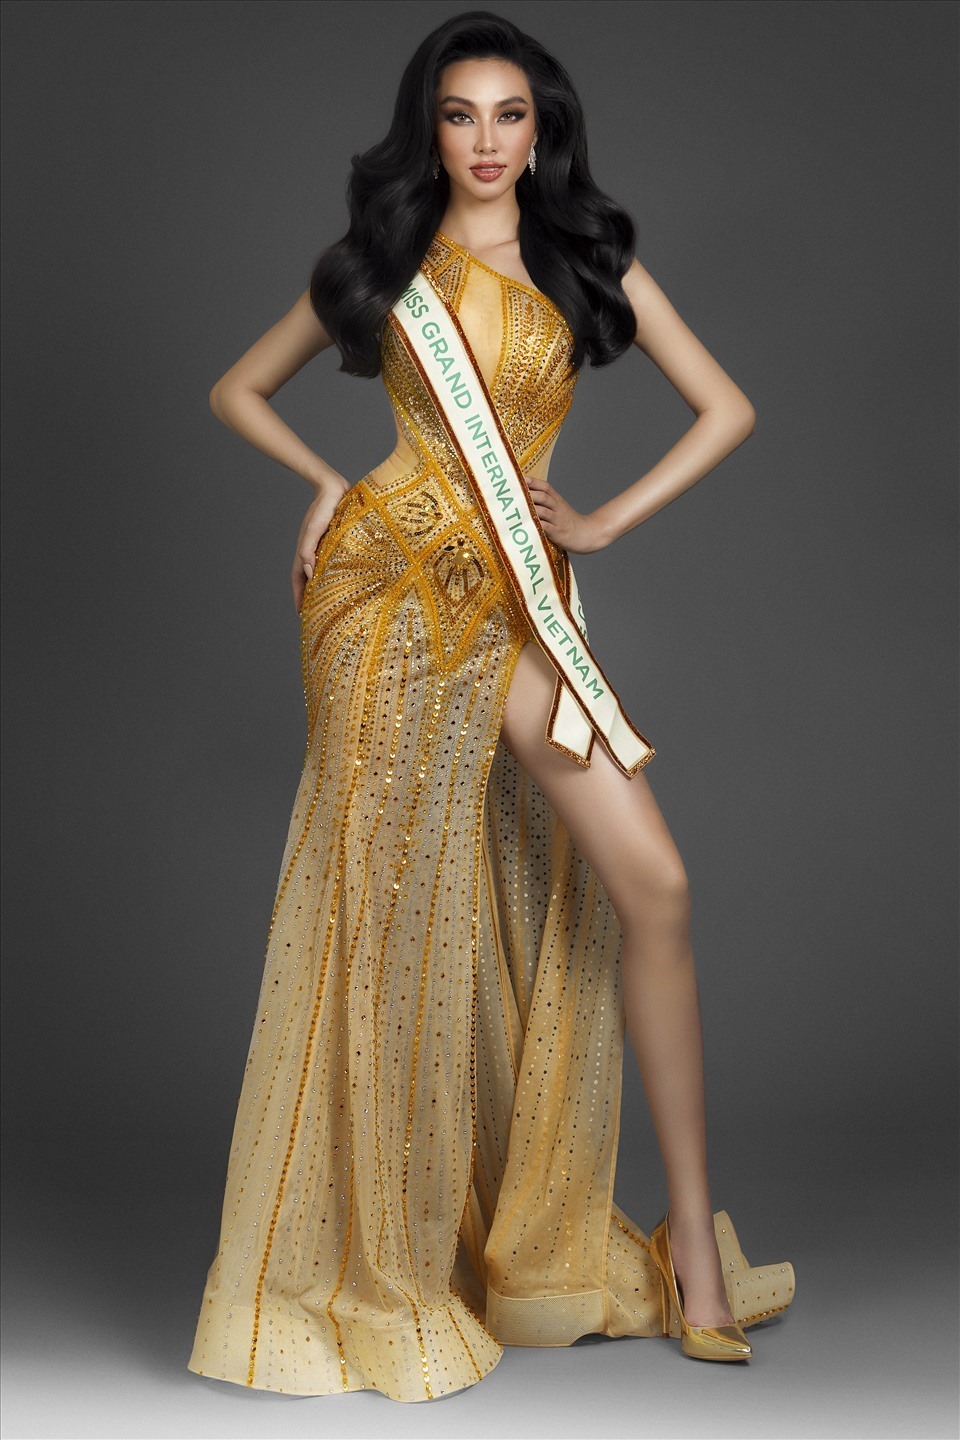 Sau Á hậu Ngọc Thảo, Thuỳ Tiên là đại diện tiếp theo của Việt Nam dự thi Miss Grand International 2021. Xuất hiện trong các sự kiện cũng như trong đời thường, người đẹp sở hữu phong cách thời trang gợi cảm, nóng bỏng.